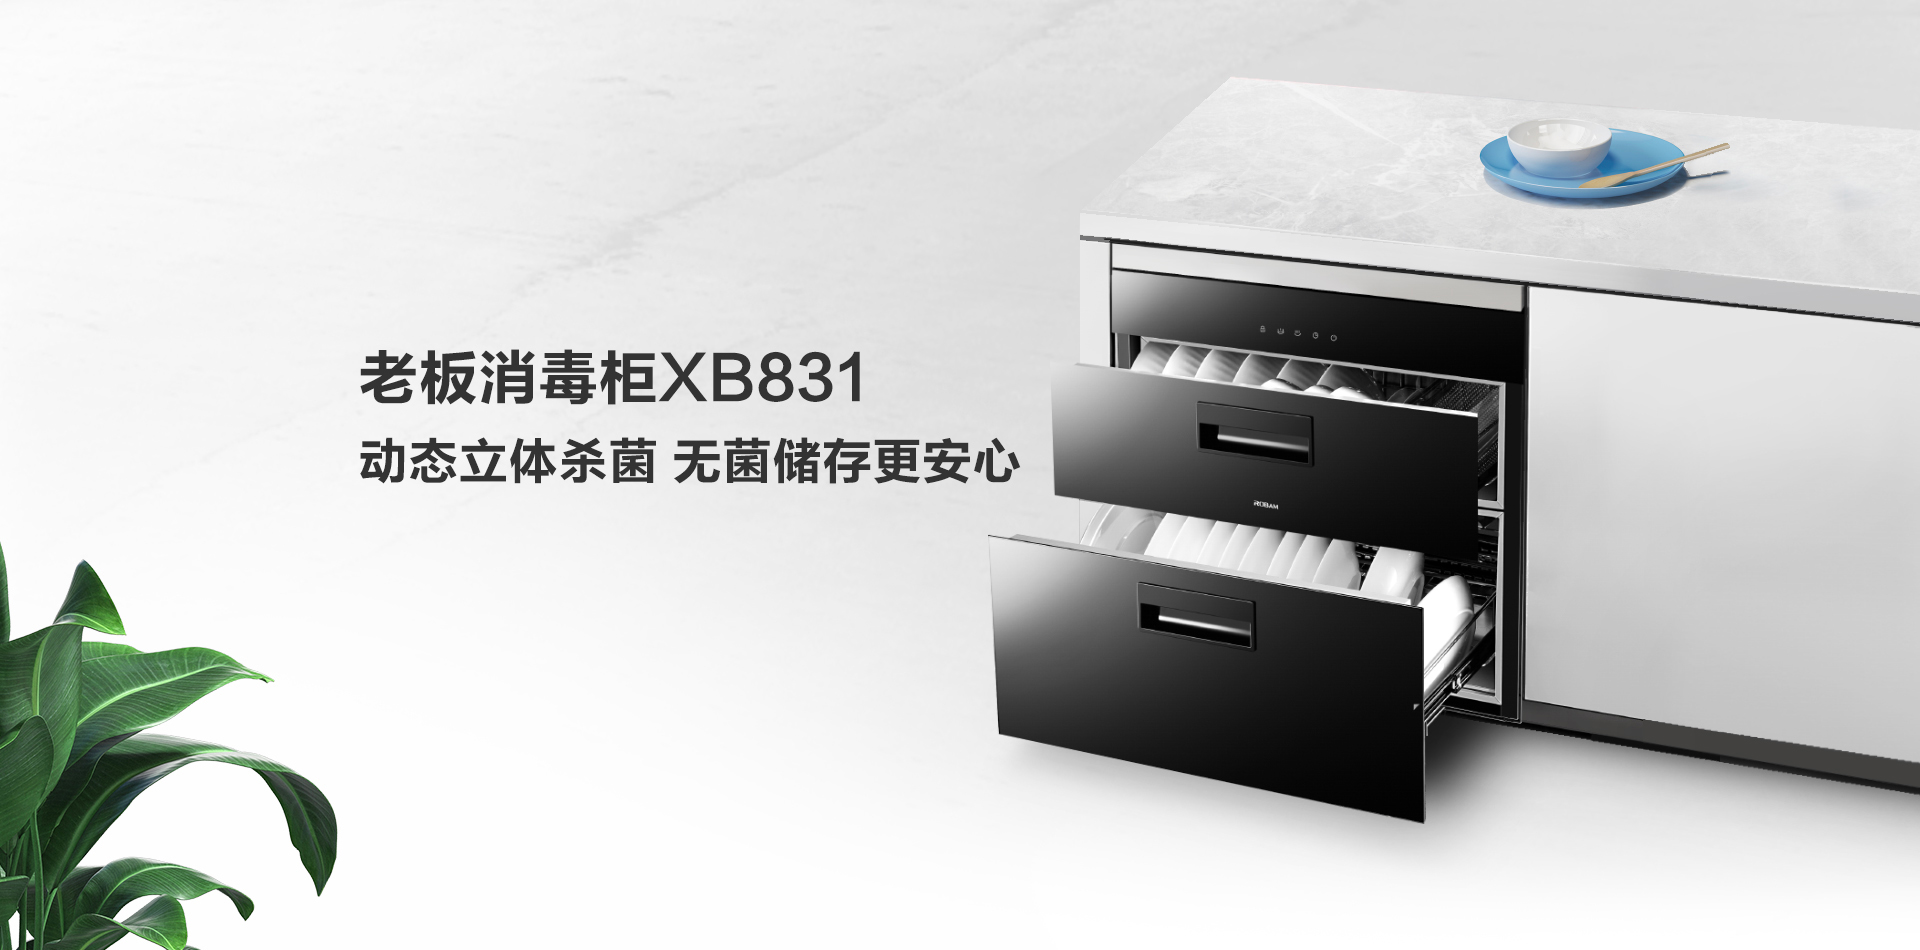 XB831消毒柜-上新-PC端-190918_01.jpg